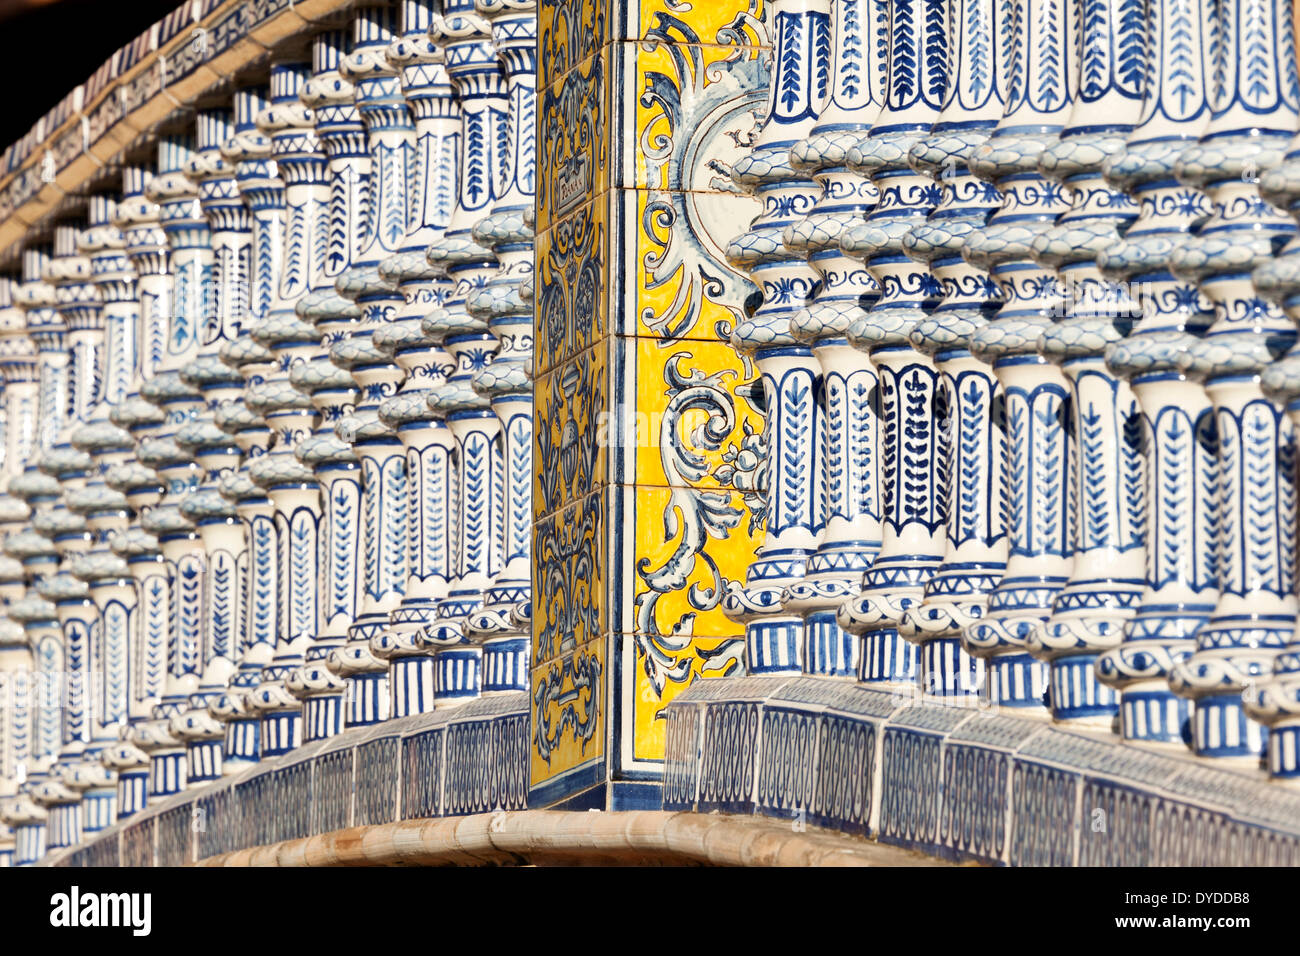 Azulejo tiles decorate a bridge at the Plaza de Espana in Seville. Stock Photo